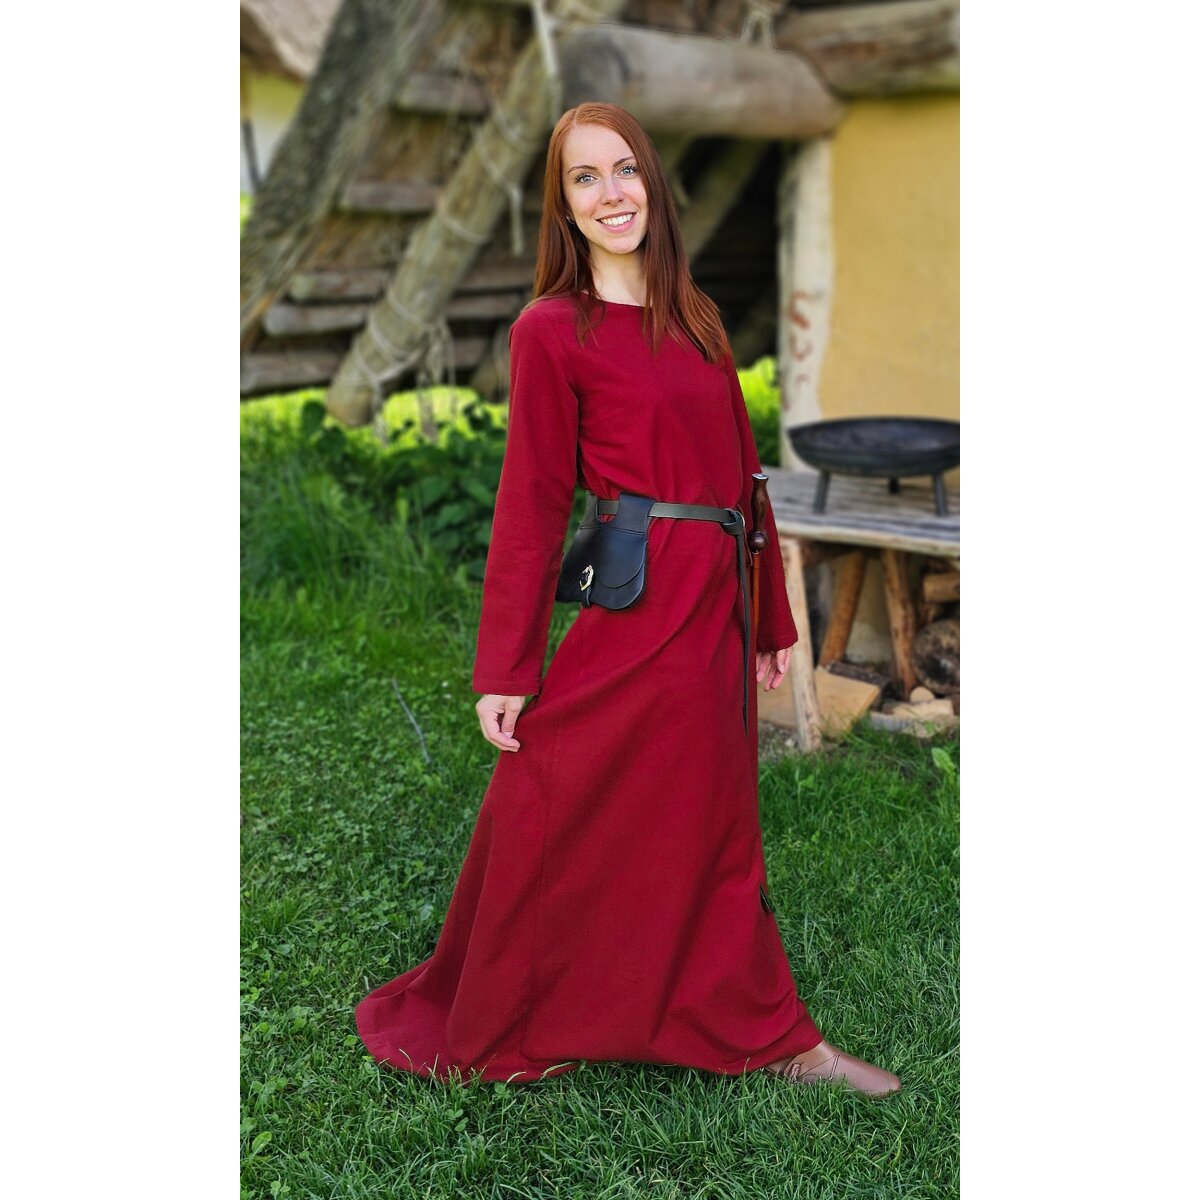 Klassisches Mittelalter Kleid oder Unterkleid rot...